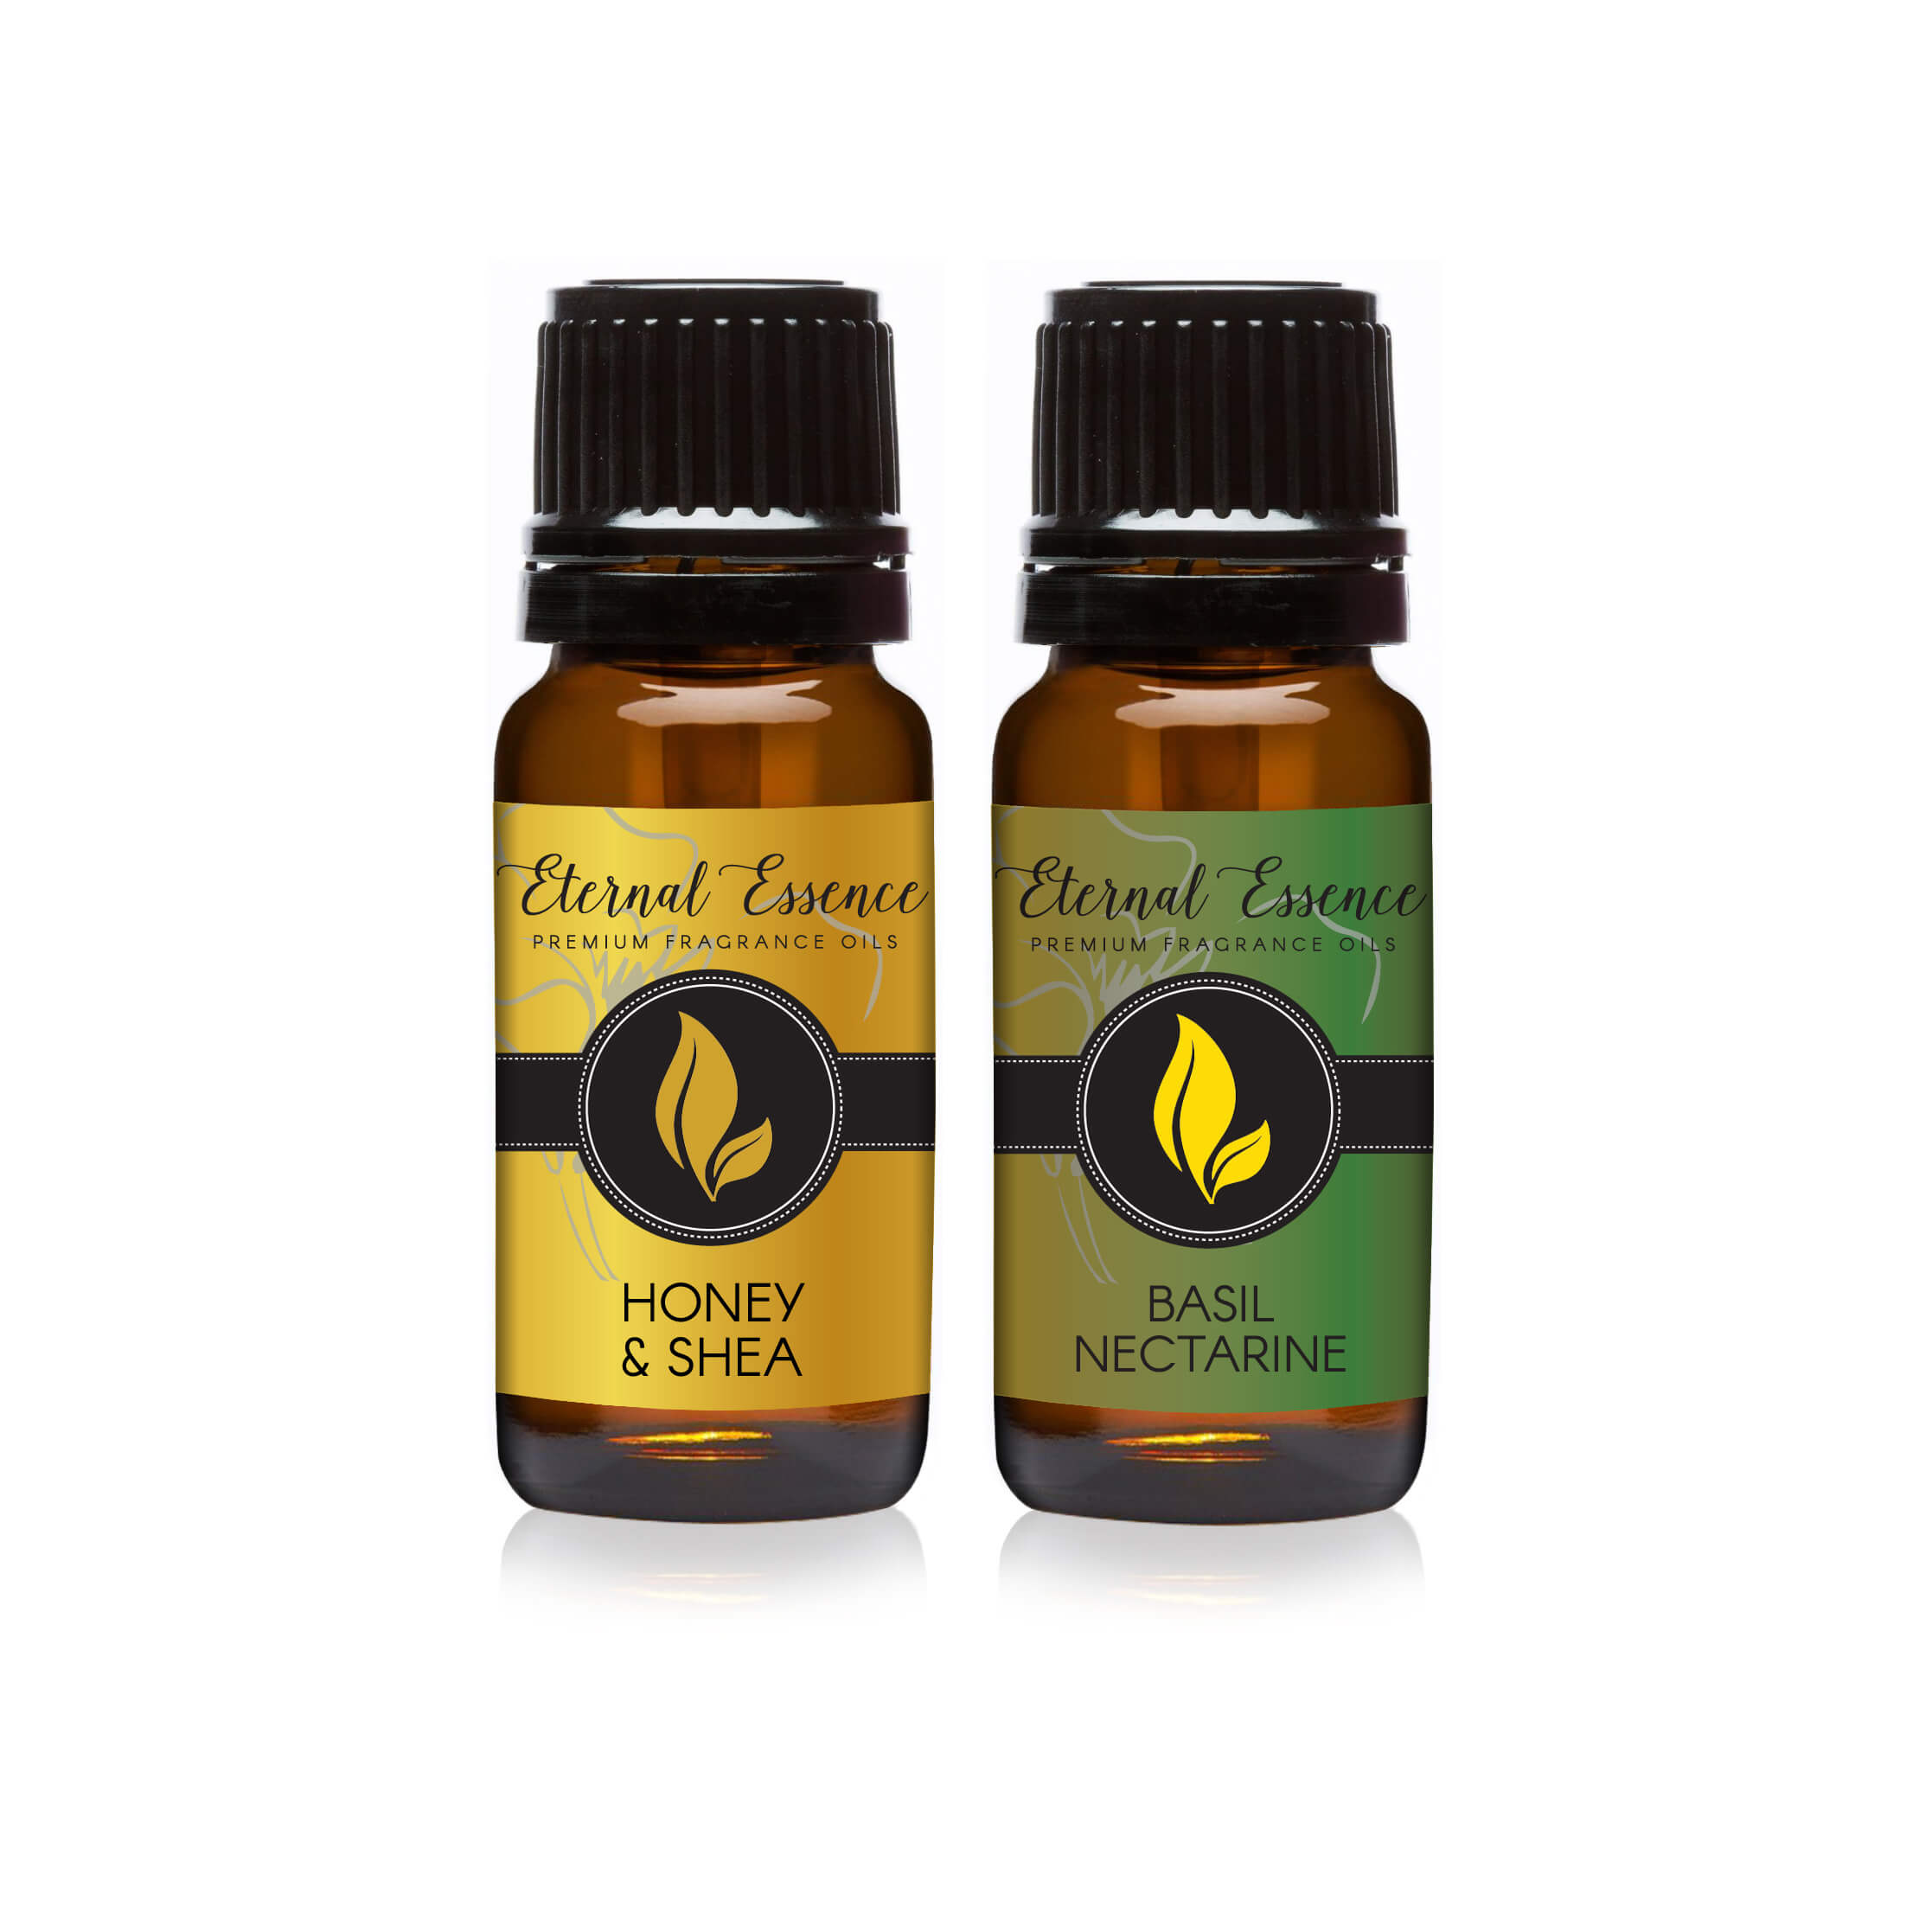 Pair (2) - Basil Nectarine & Honey & Shea - Premium Fragrance Oil Pair - 10ML